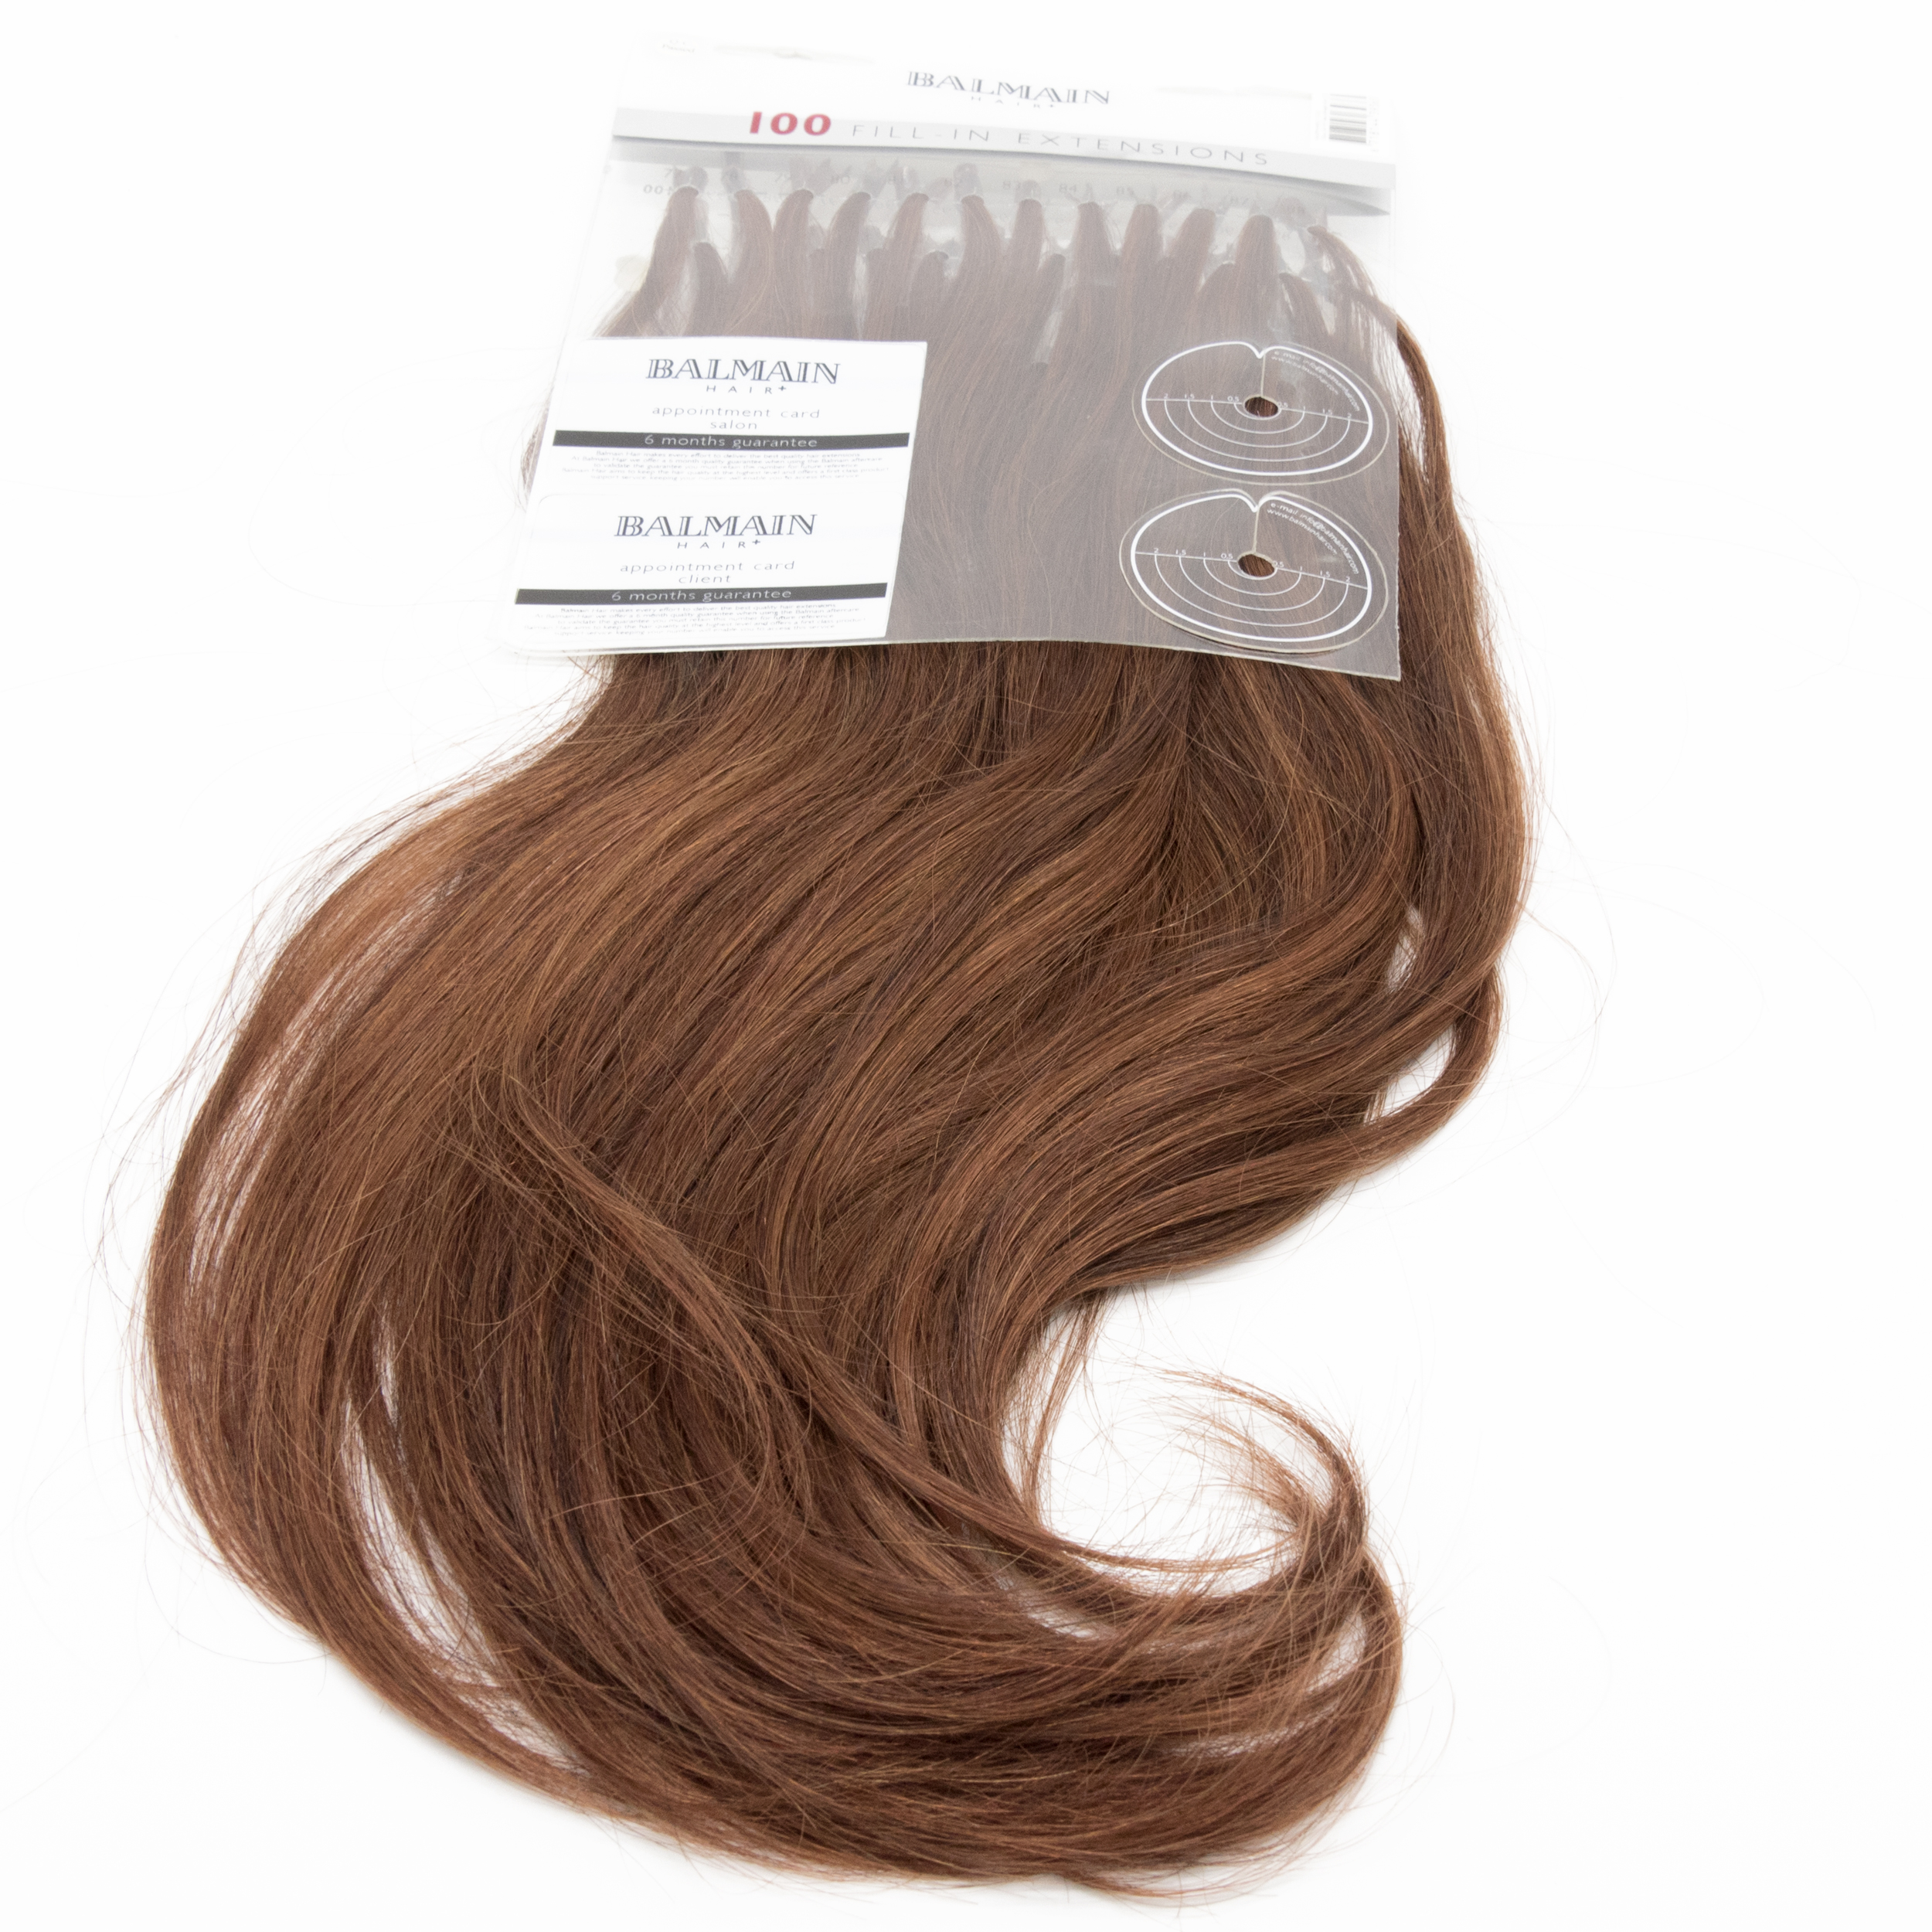 Anneaux en Silicone Blond - Connecteur pour Extension de cheveux à Froid